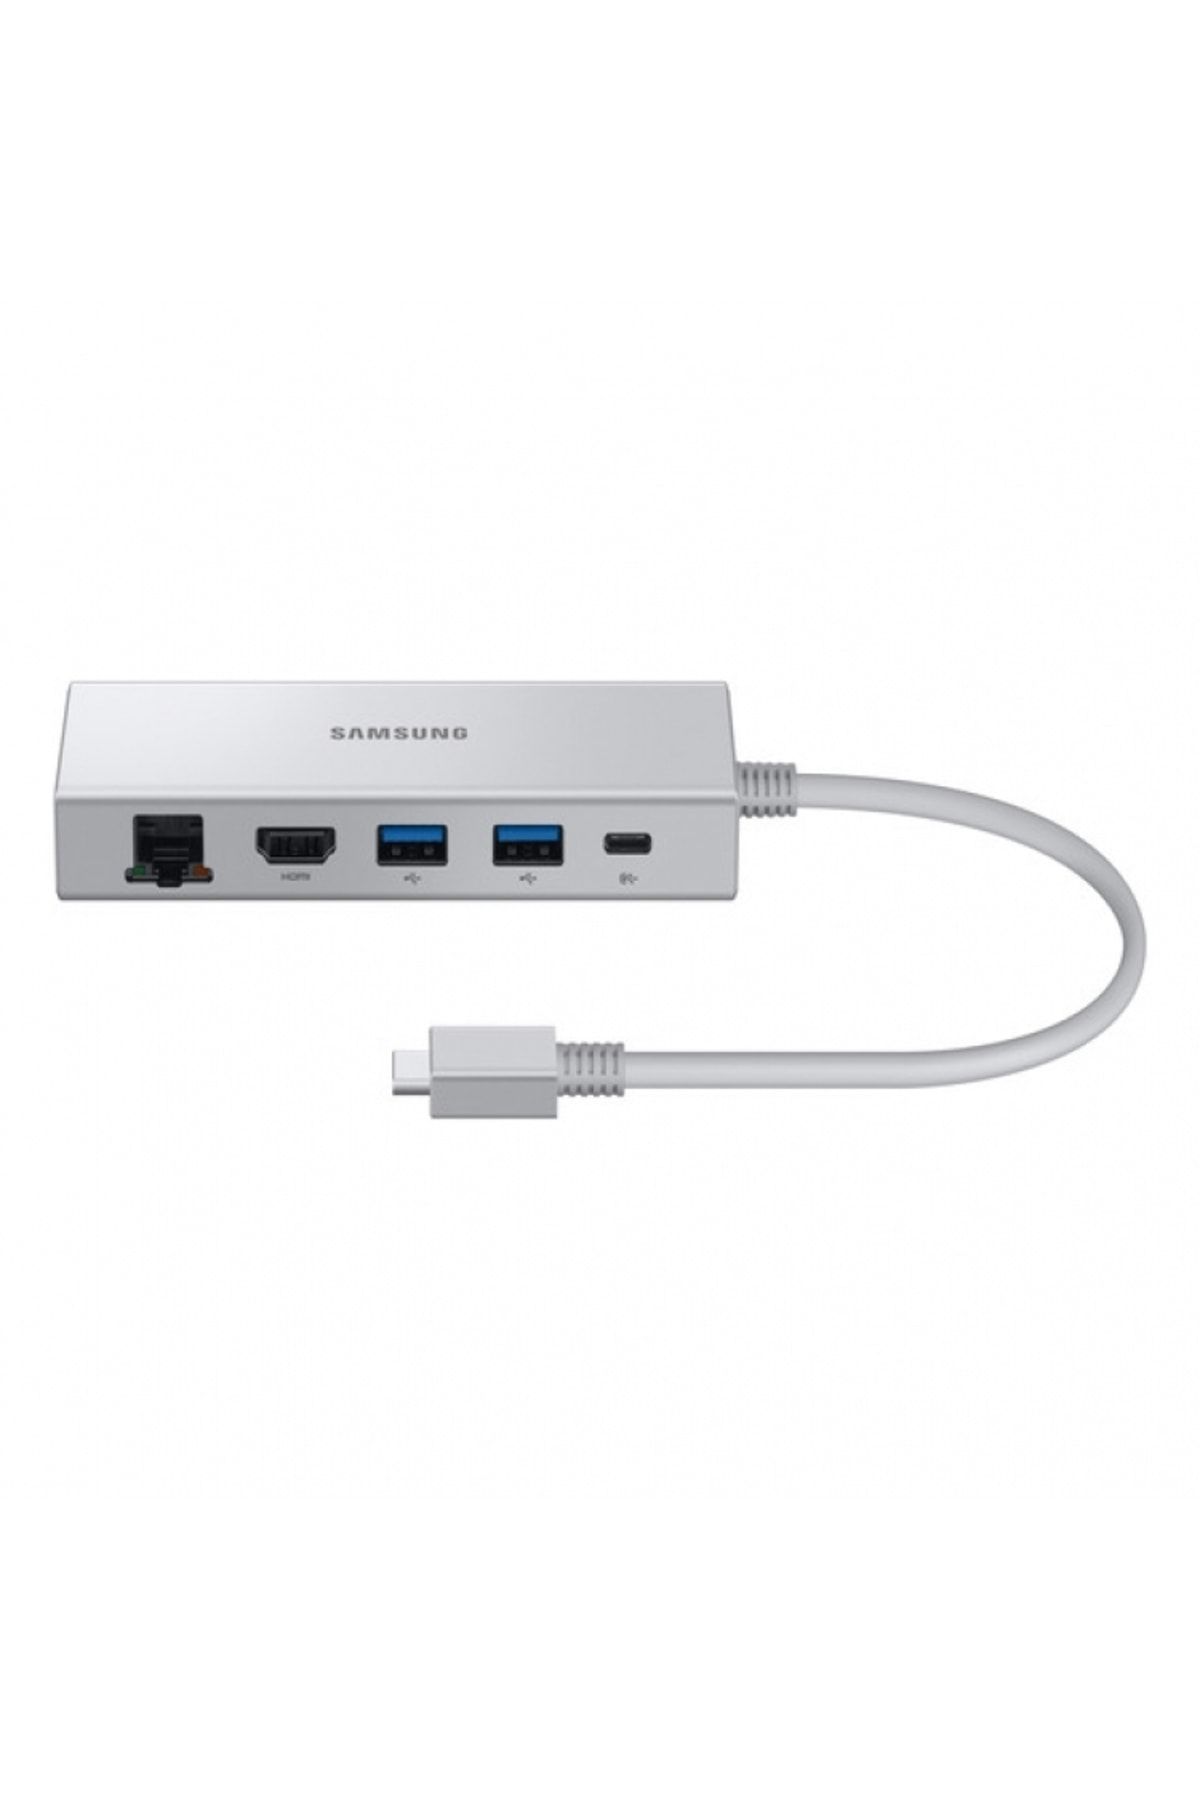 Samsung EE-P5400U Multiport Adaptör USB 3.0 Type-C Gigabit Ethernet, HDMI, Power Supply Samsung Türk